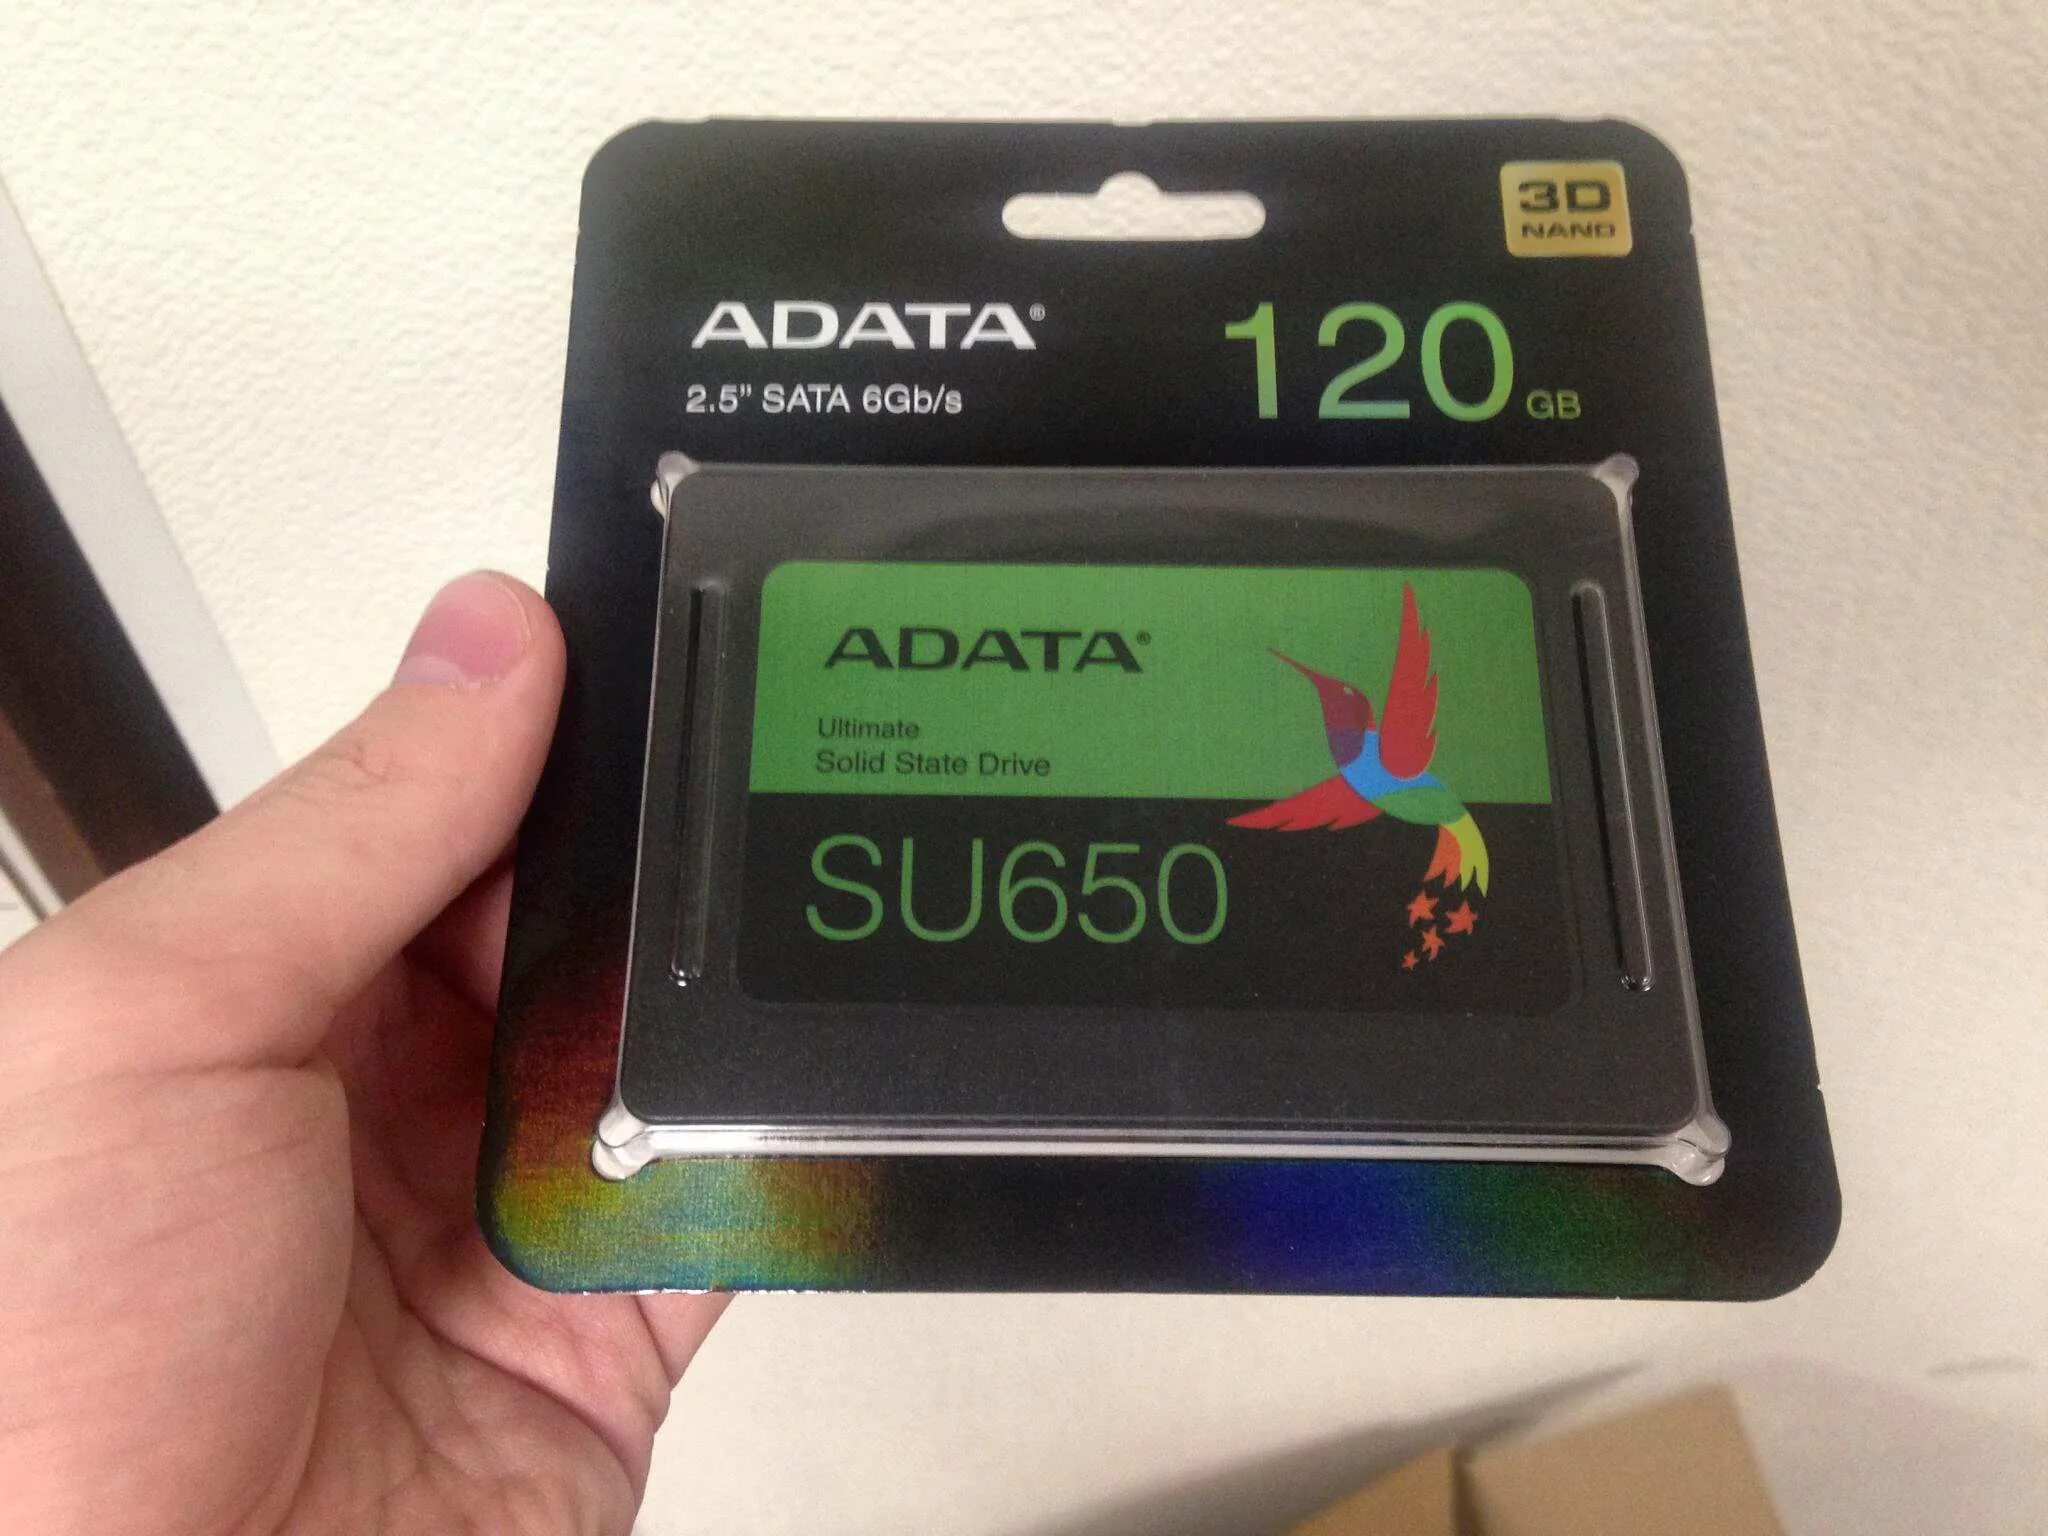 SSD A data 120gb. Накопитель SSD A-data SATA III 120gb. Ссд АДАТА 120 ГБ. SSD A data su650 120gb.